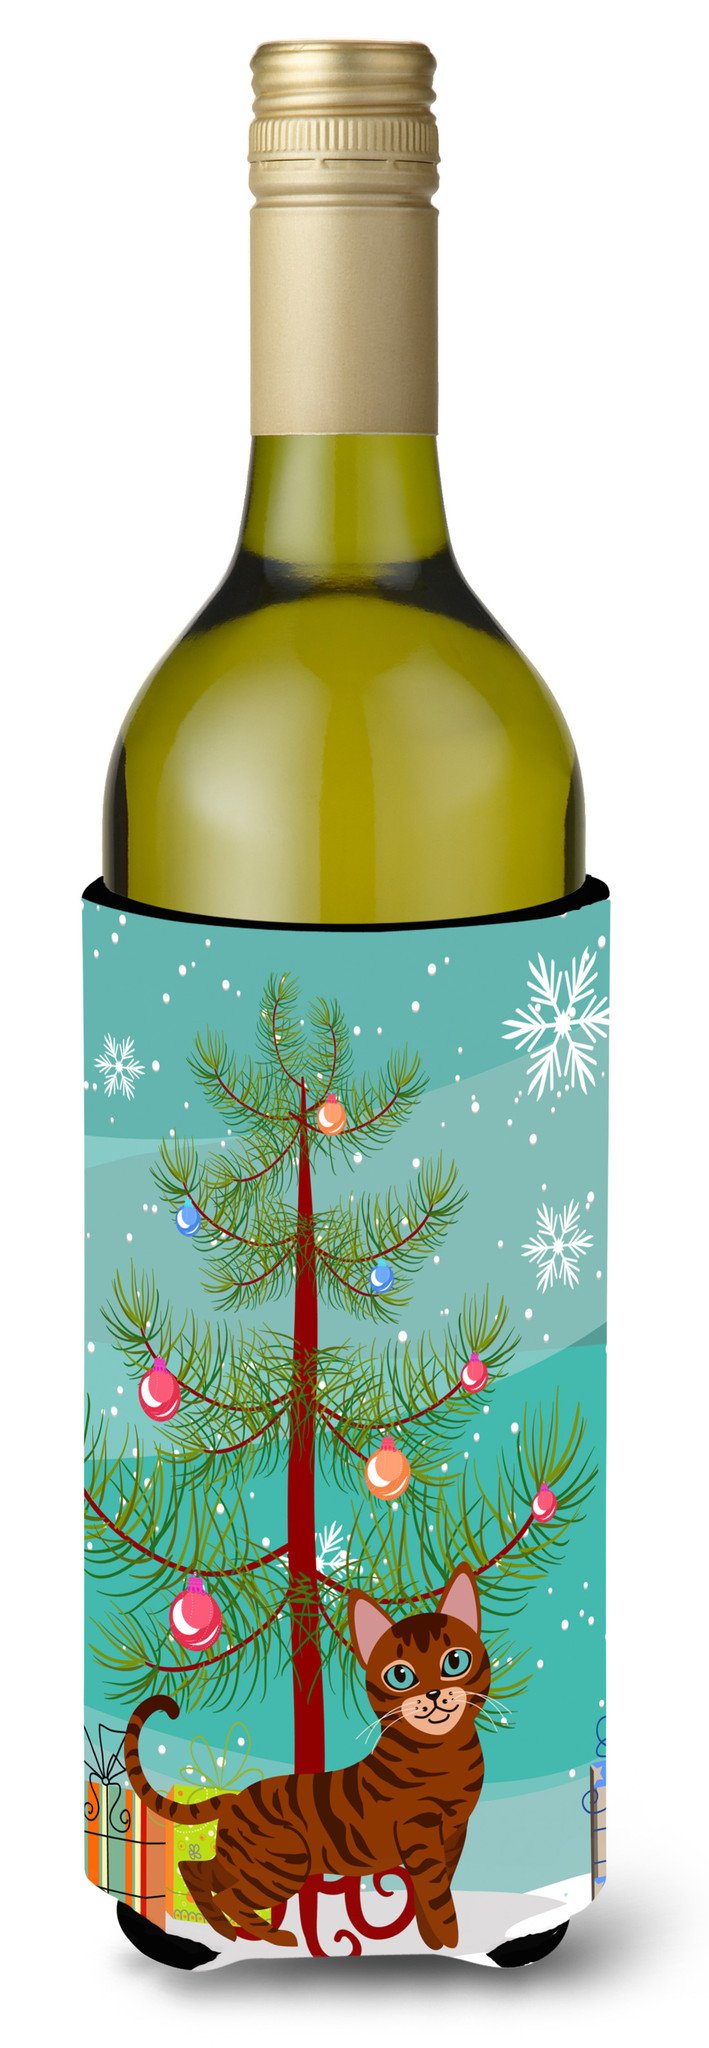 Toyger Cat Merry Christmas Tree Wine Bottle Beverge Insulator Hugger BB4434LITERK by Caroline's Treasures